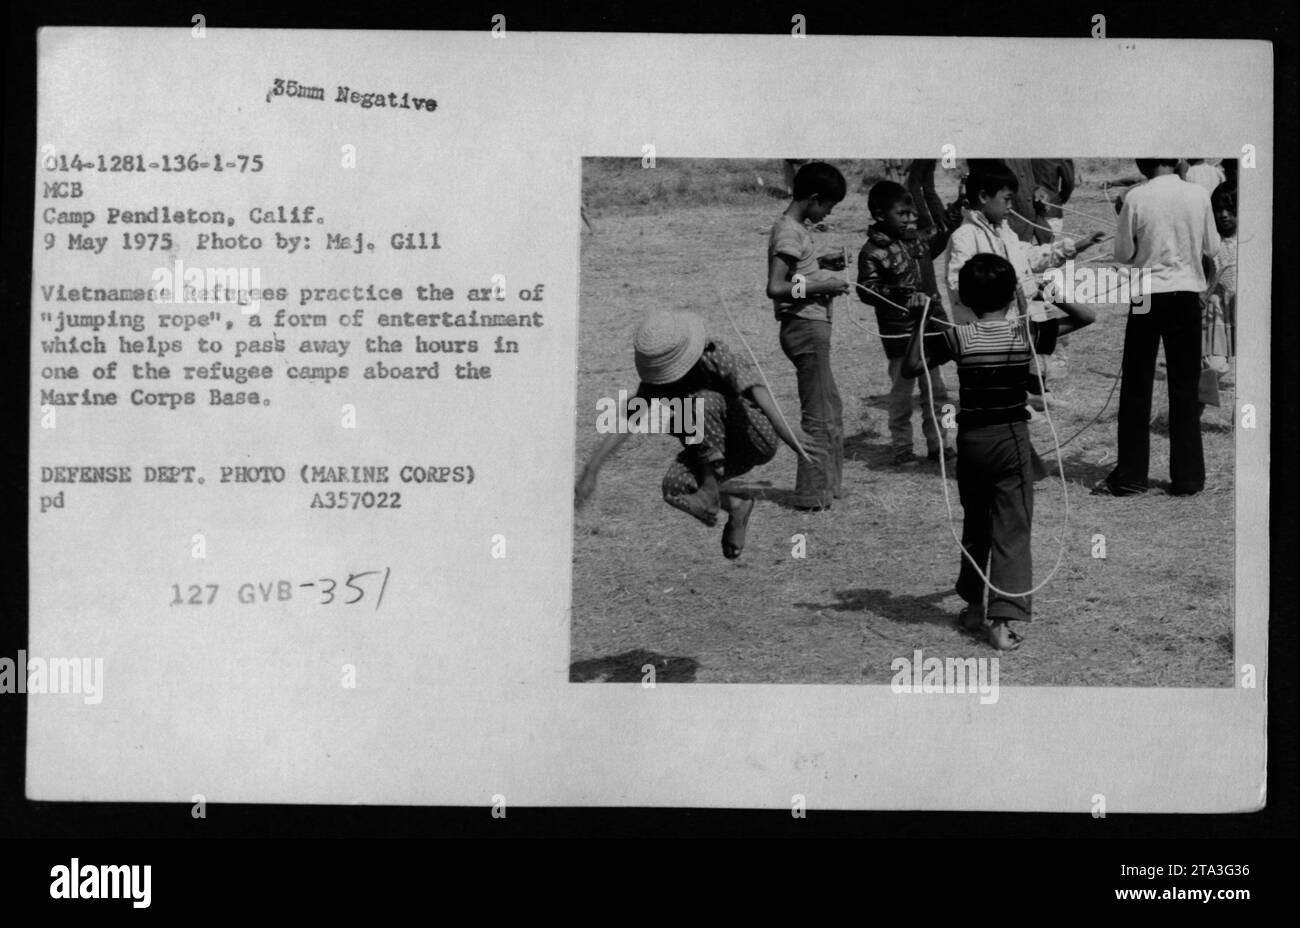 Vietnamesische Flüchtlinge im MCB Camp Pendleton, Kalifornien, nehmen am 9. Mai 1975 an Freizeitaktivitäten Teil, die als „Springseil“ bekannt sind, um die Zeit in einem der Flüchtlingslager zu verbringen. Das Bild zeigt die Szene, als Claudia Cardinale, Nguyen Cao Ky, Rosemary Clooney und Betty Ford das Camp besuchen. Stockfoto